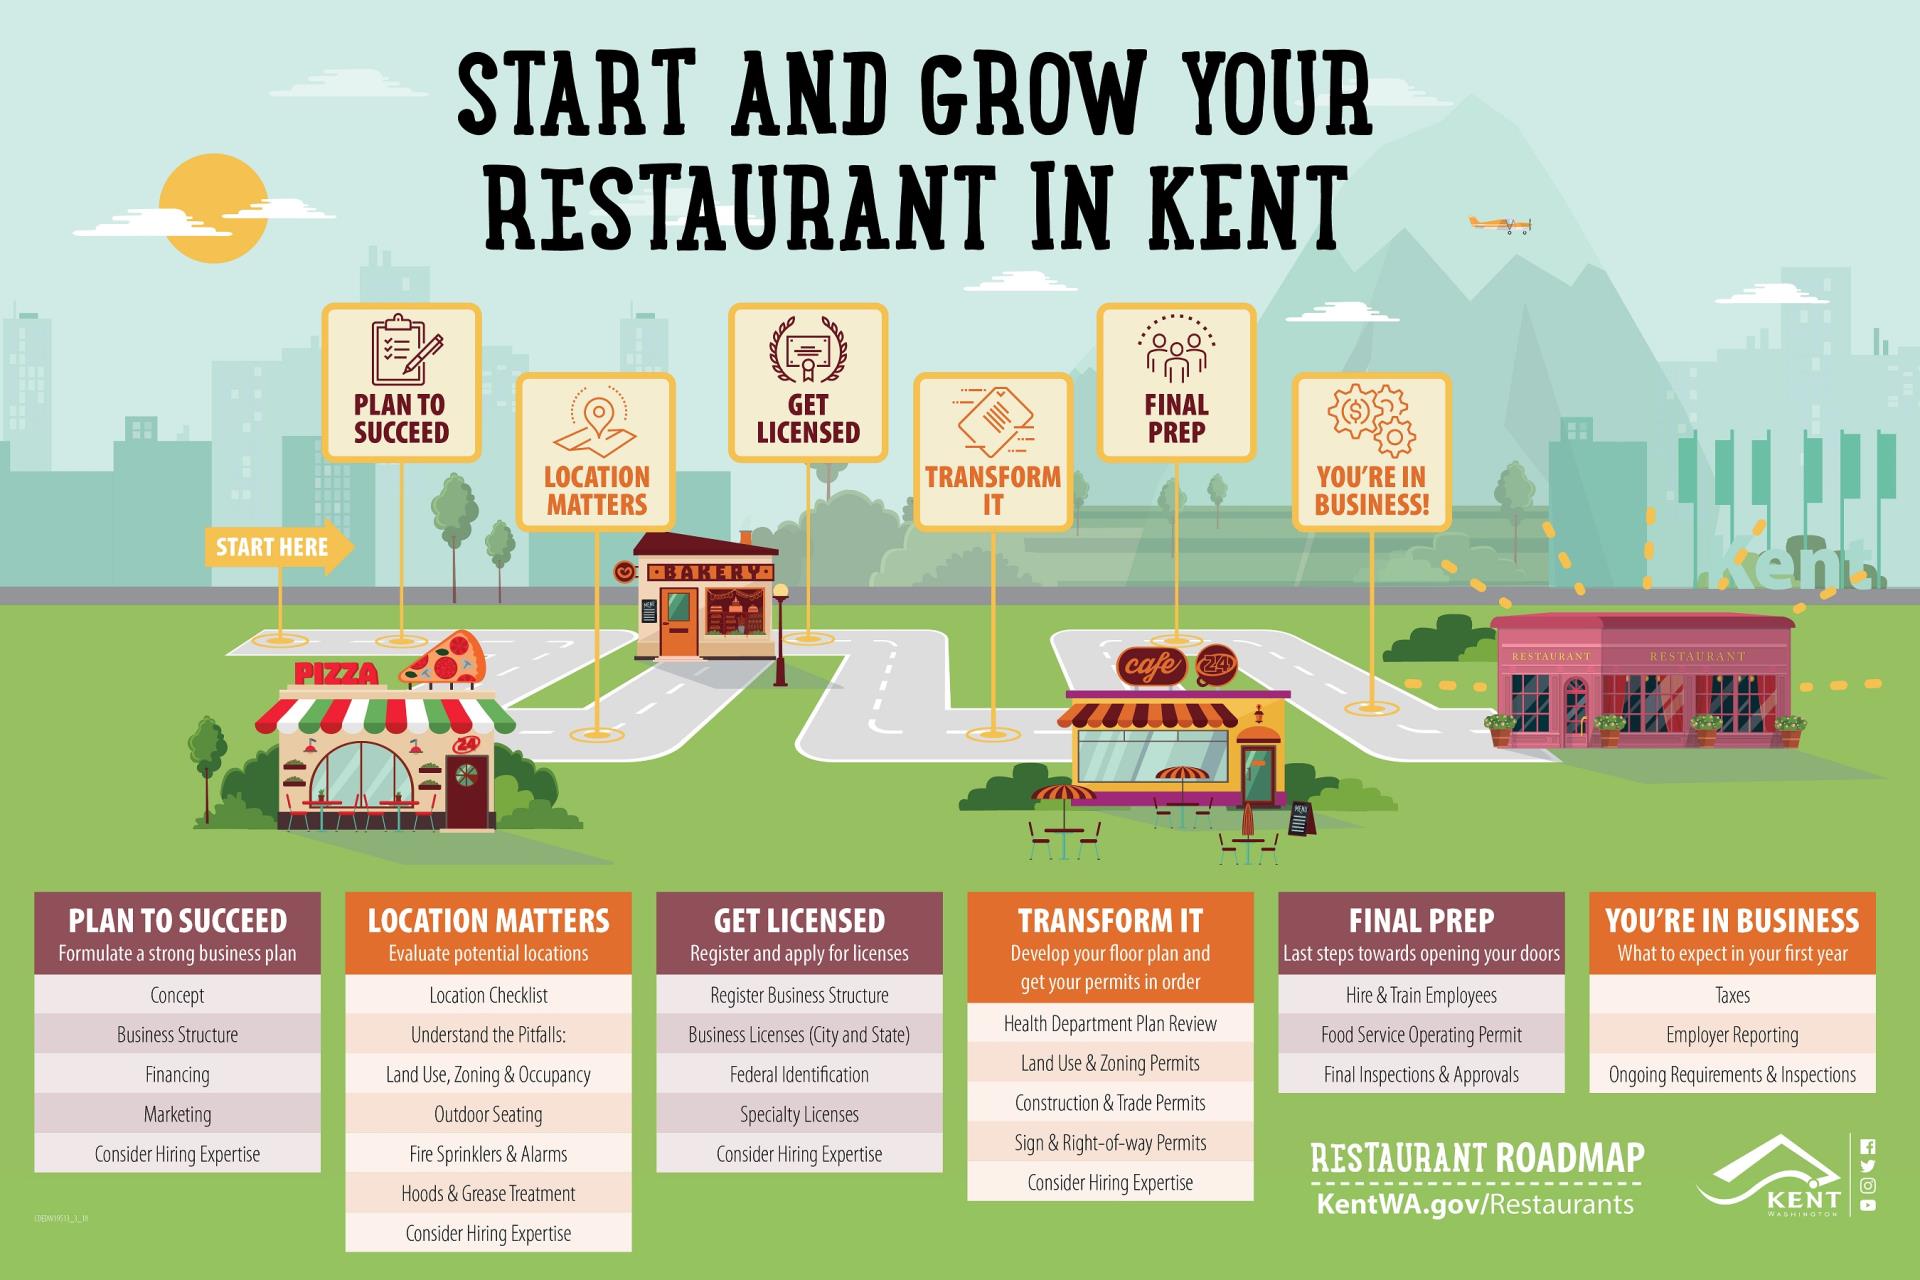 Start & Grow Your Restaurant in Kent | City of Kent